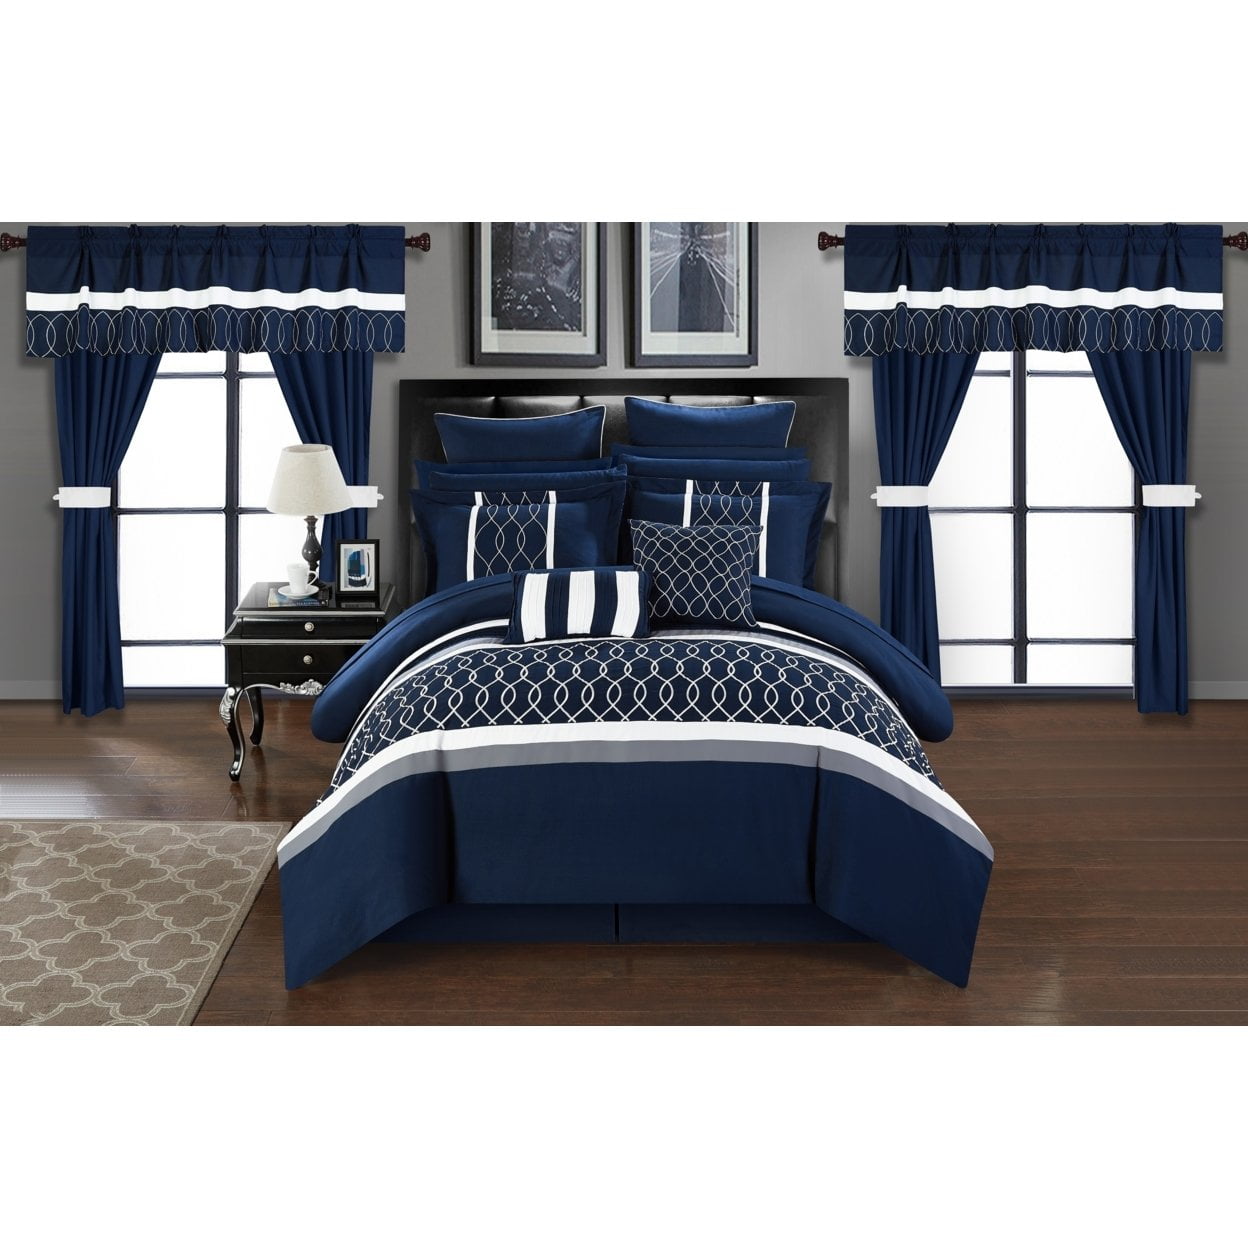 Picture of Luxury Bedding CS2887 Dinah Navy Comforter Set, Queen